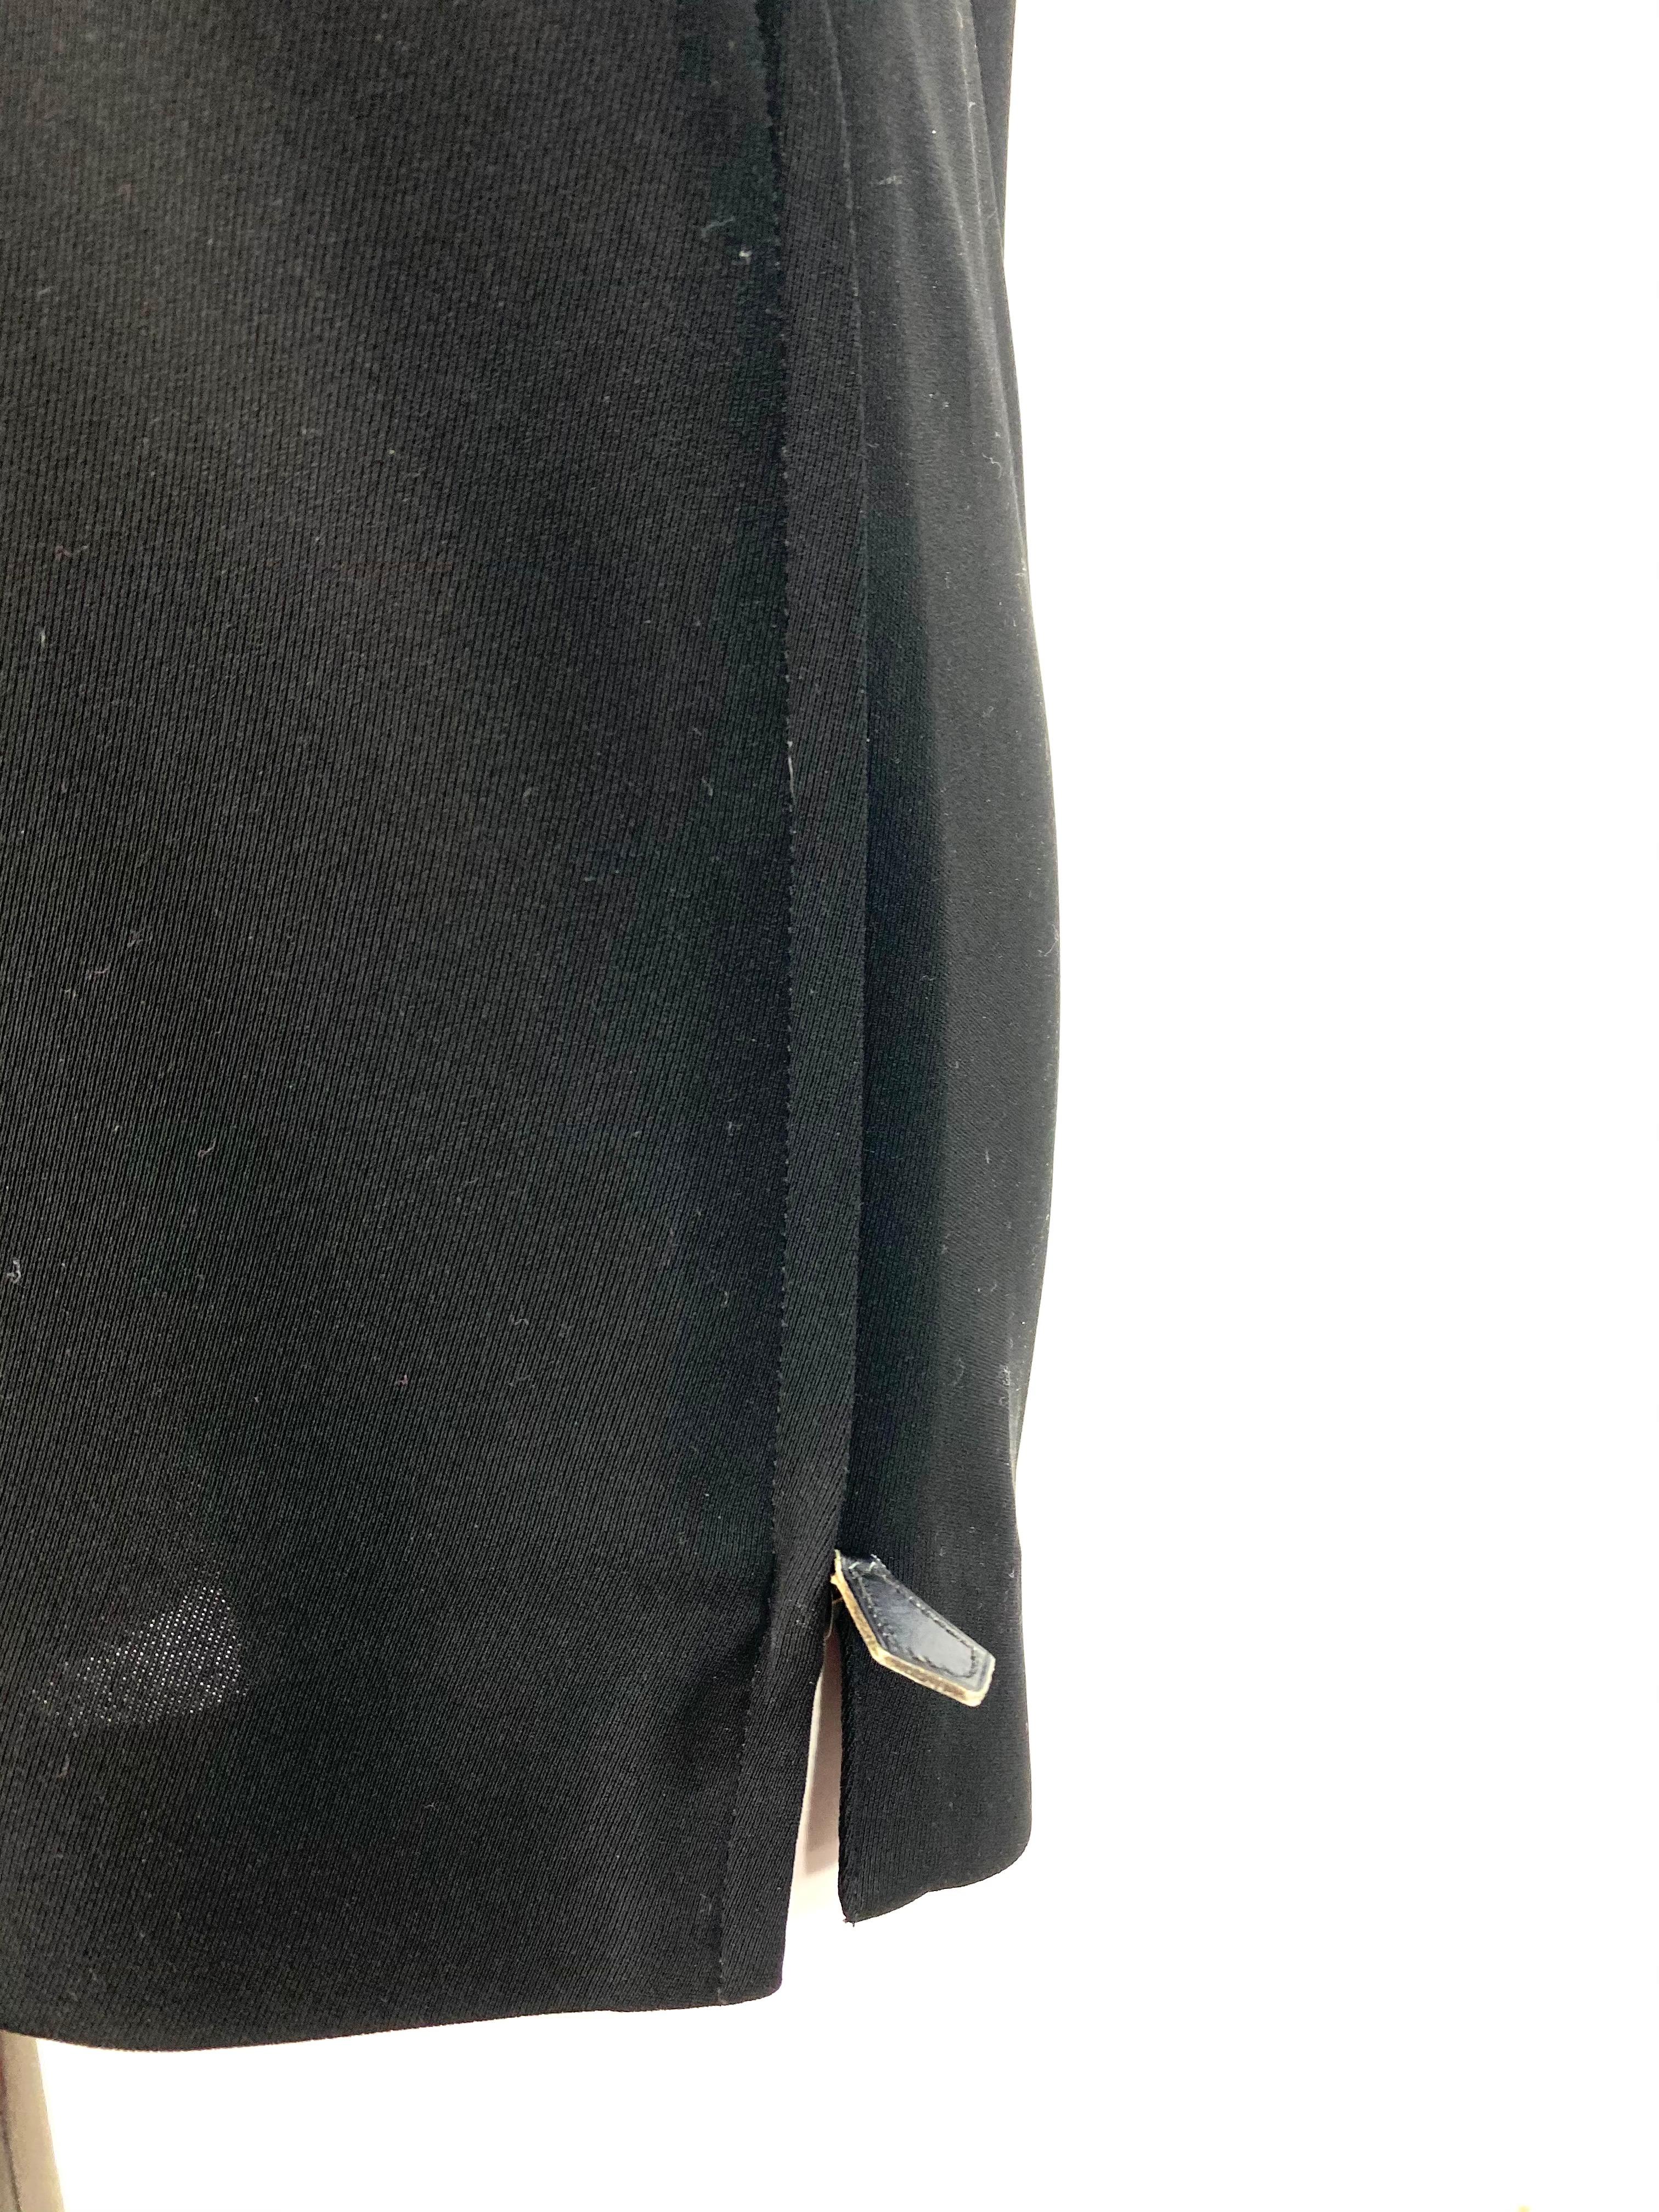 Détails du produit :

Robe noire en polyester doublée de soie créée par Hermès, comportant  fermeture éclair sur les deux côtés, manches 3/4 et col ras du cou.
Fabriqué en France.